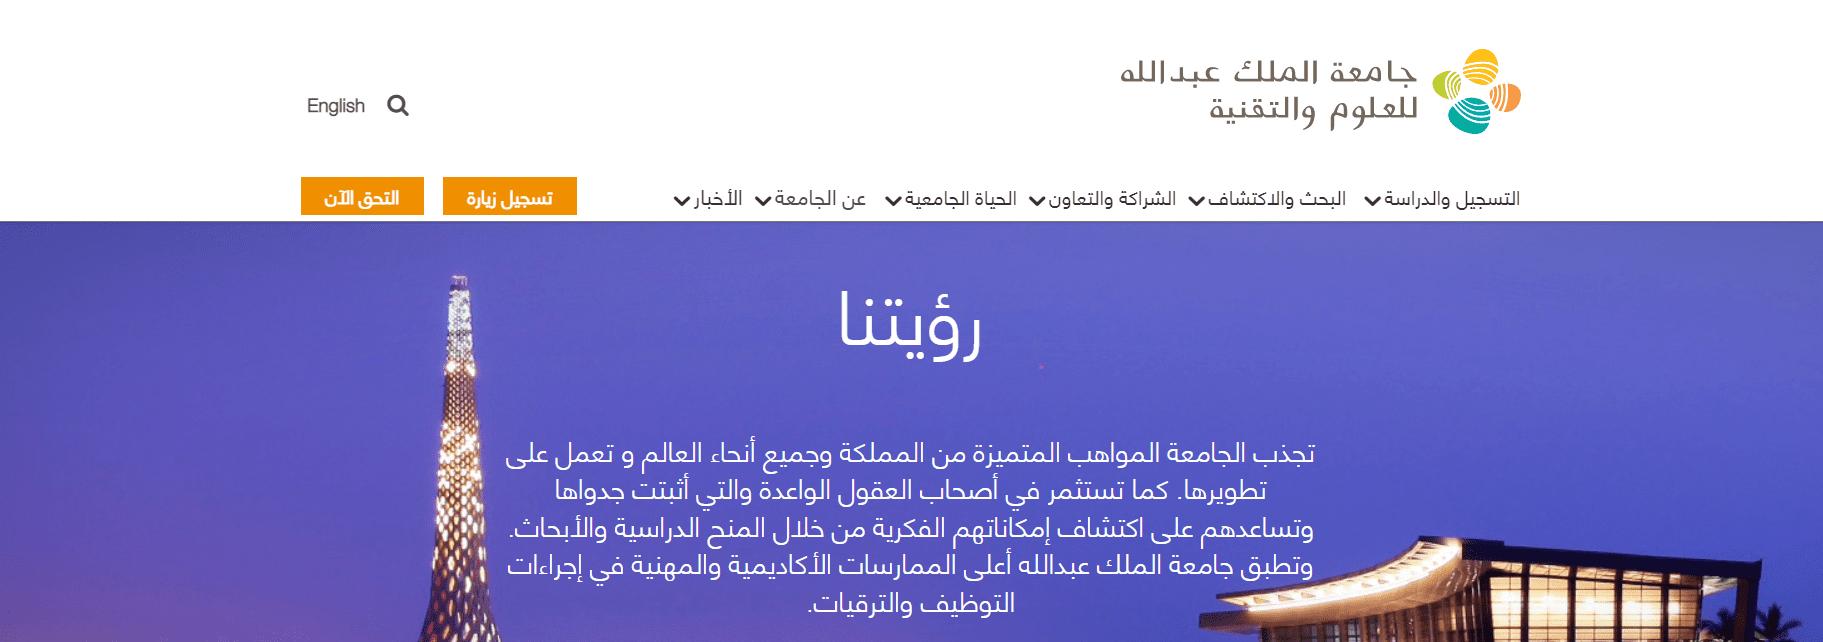 شروط القبول في جامعة الملك عبدالله للعلوم والتقنية والتخصصات الموجودة بها